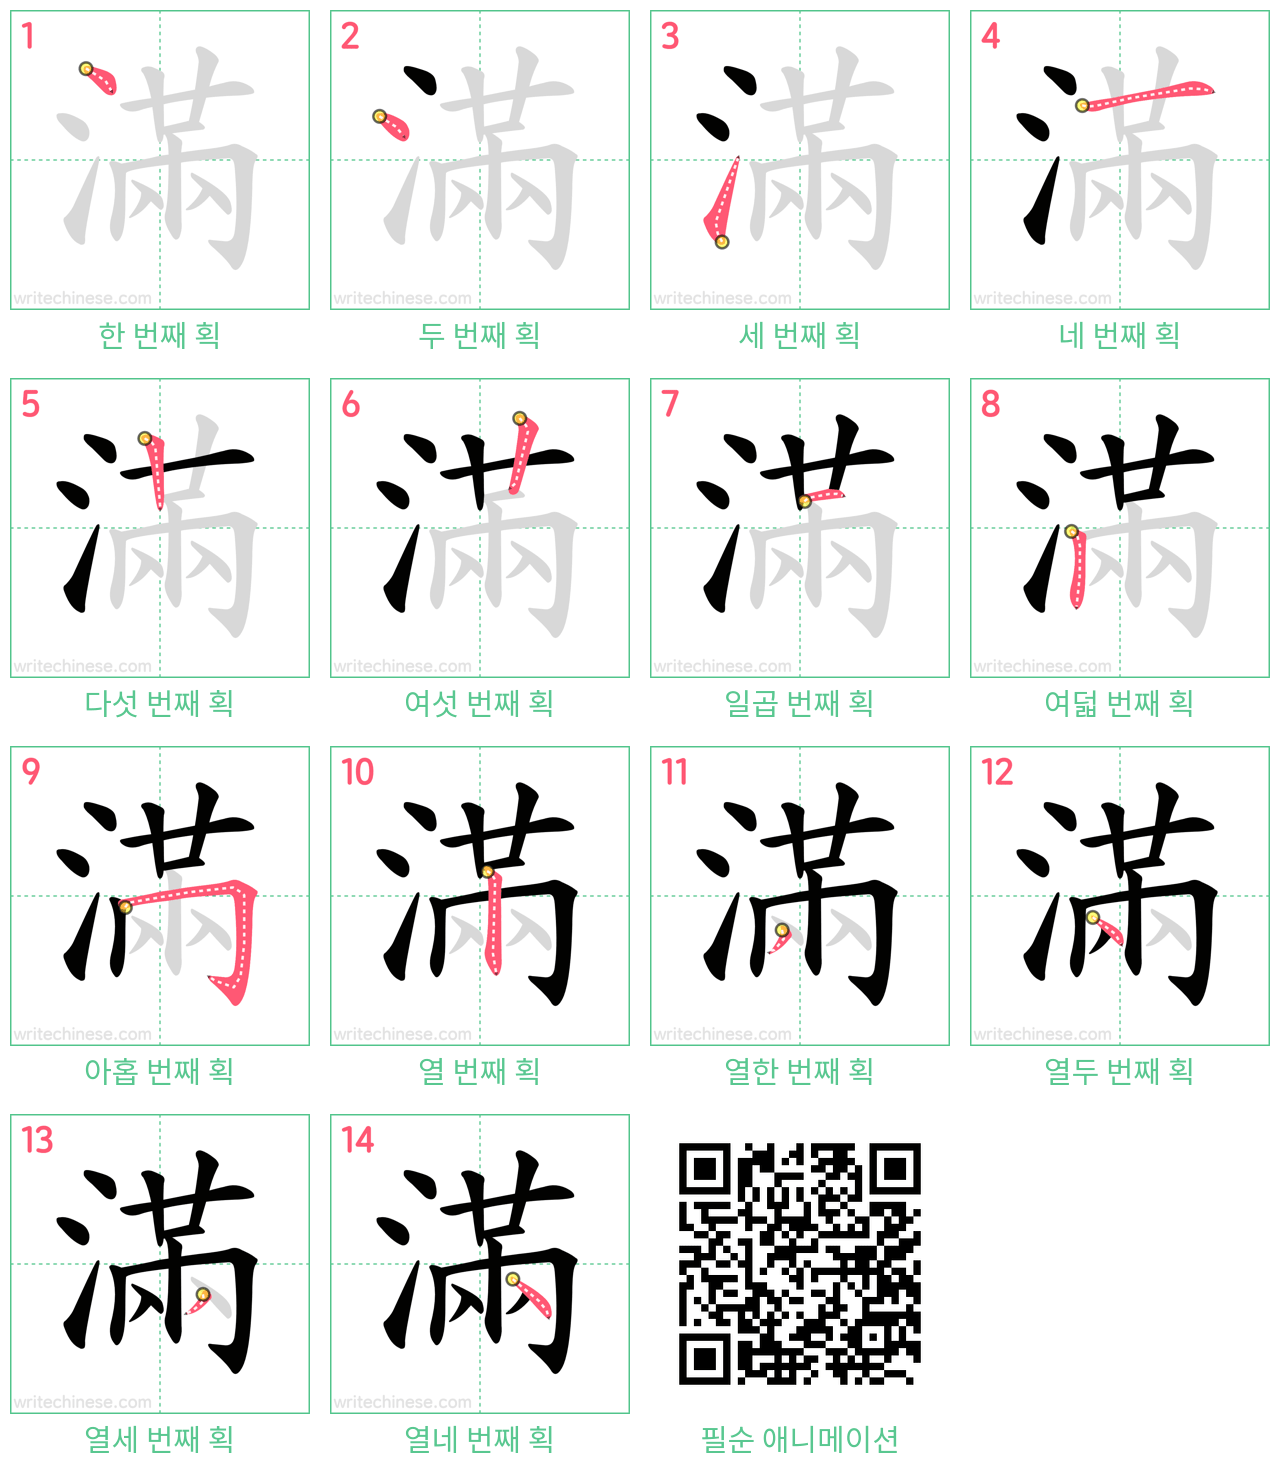 滿 step-by-step stroke order diagrams